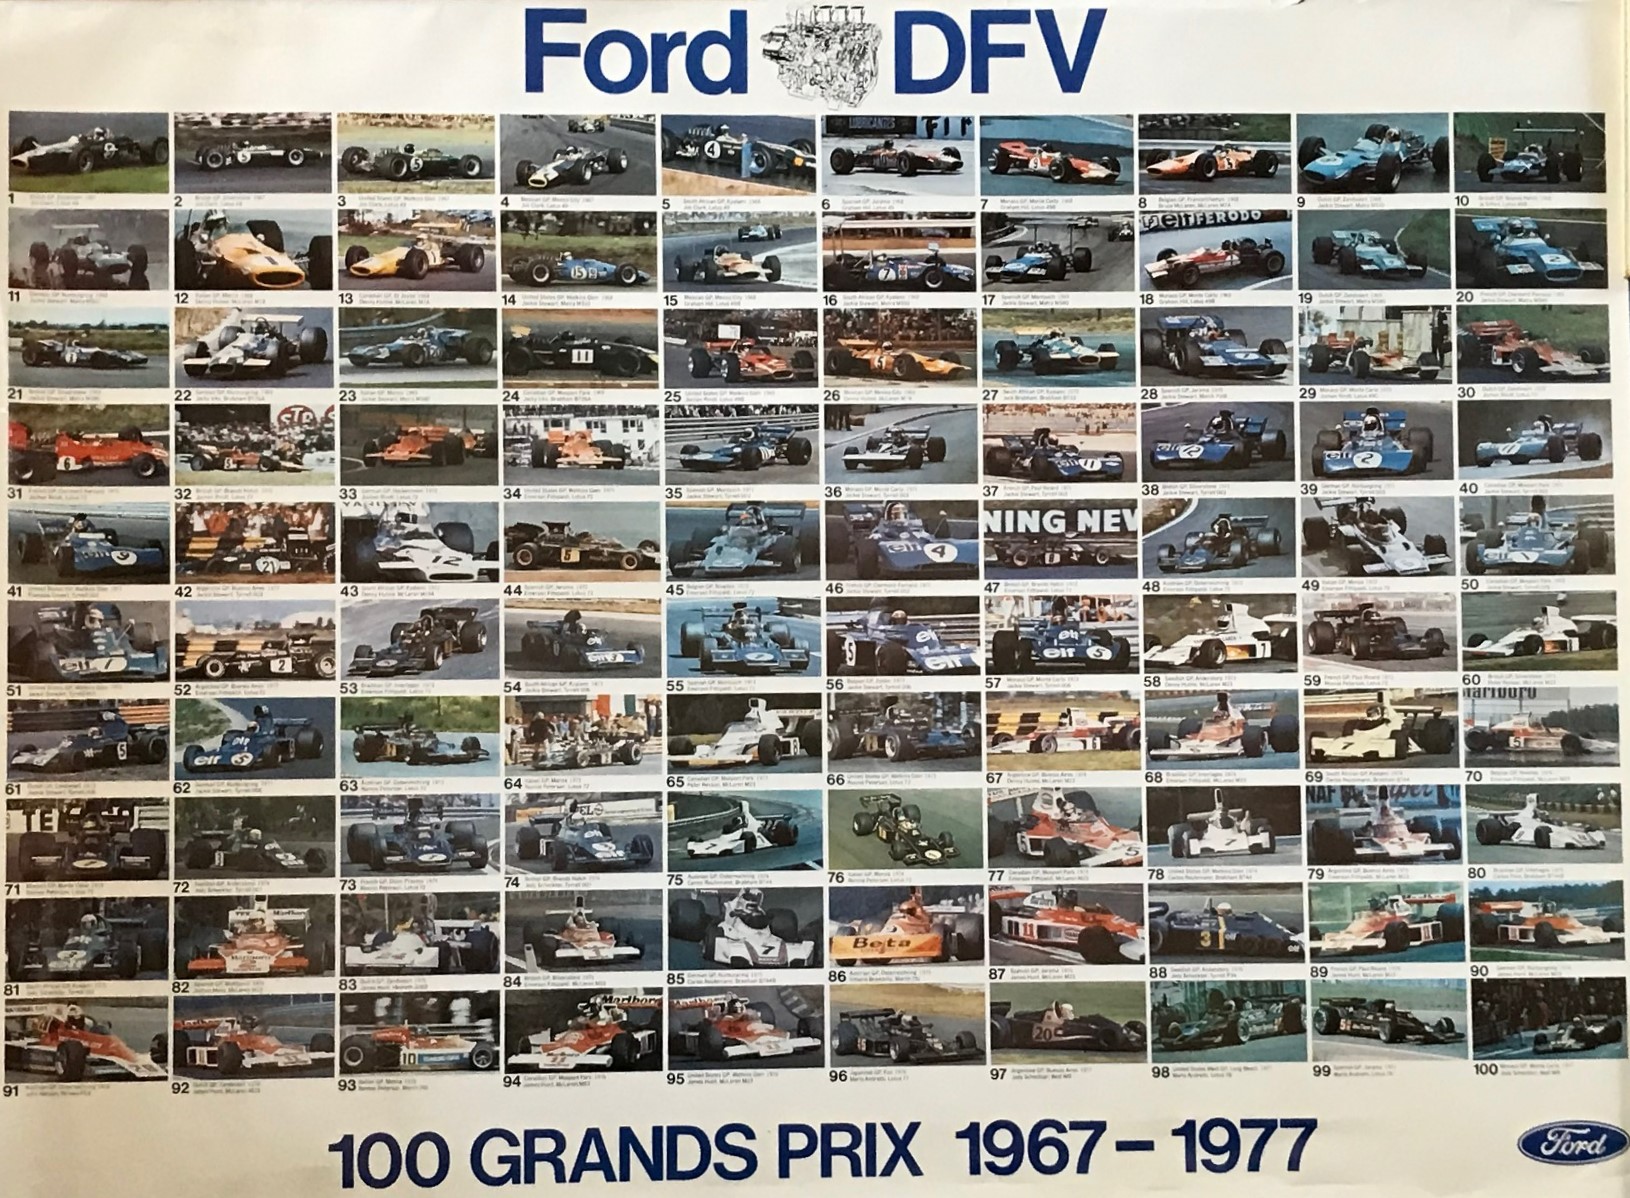 Ford DFV i 100 Grands Prix - 1967 - 1977 - poster i format 75 x 100 cm